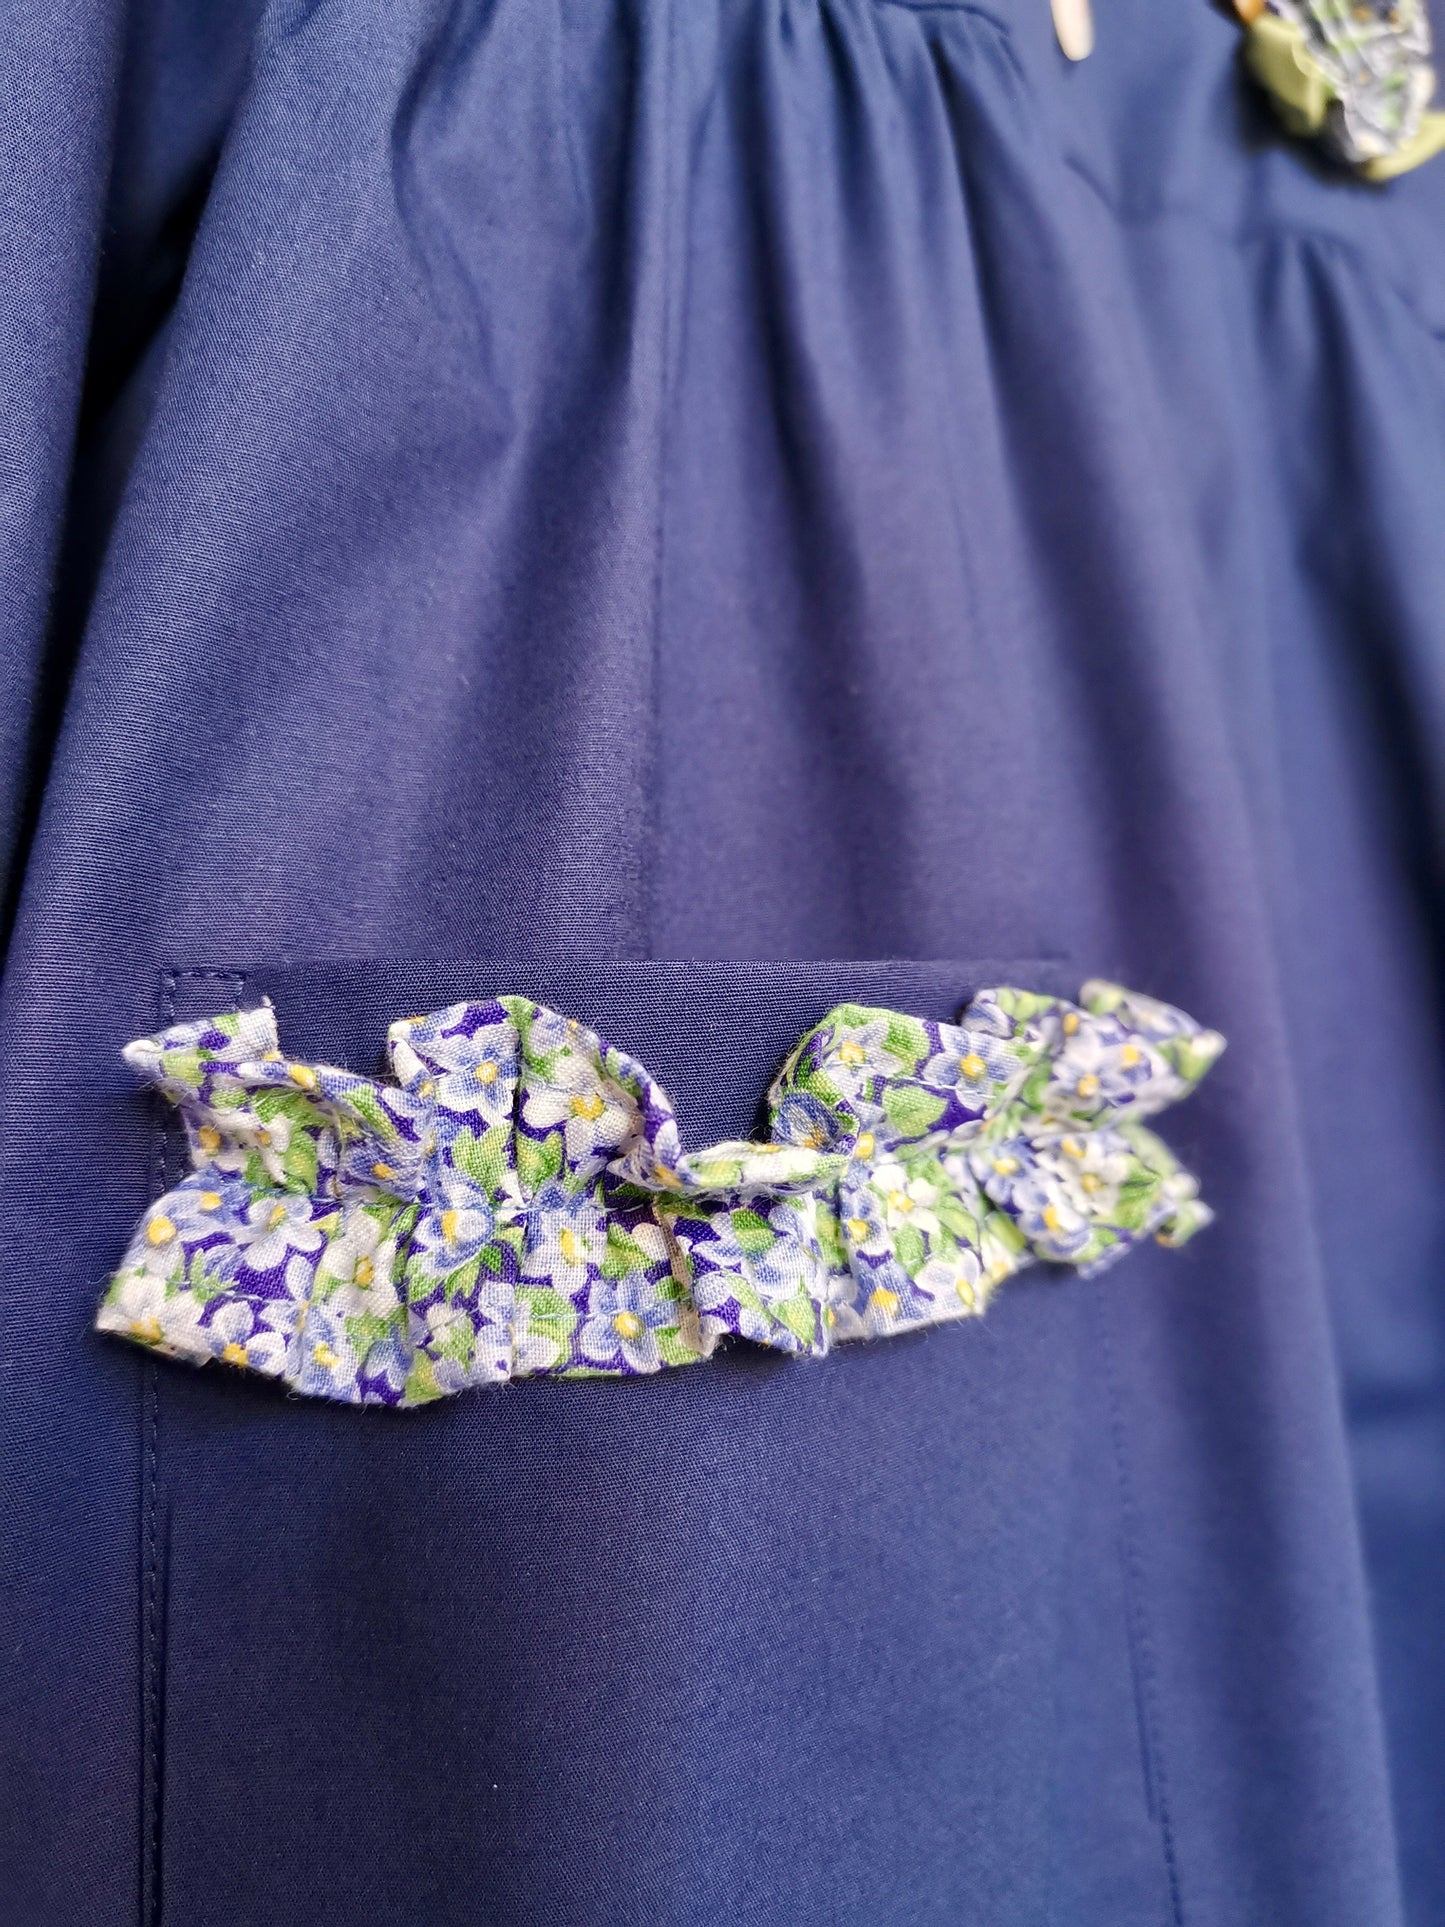 Riservato il grembiulino blu con fiore e rouches e colletto pierrot per scuola primaria